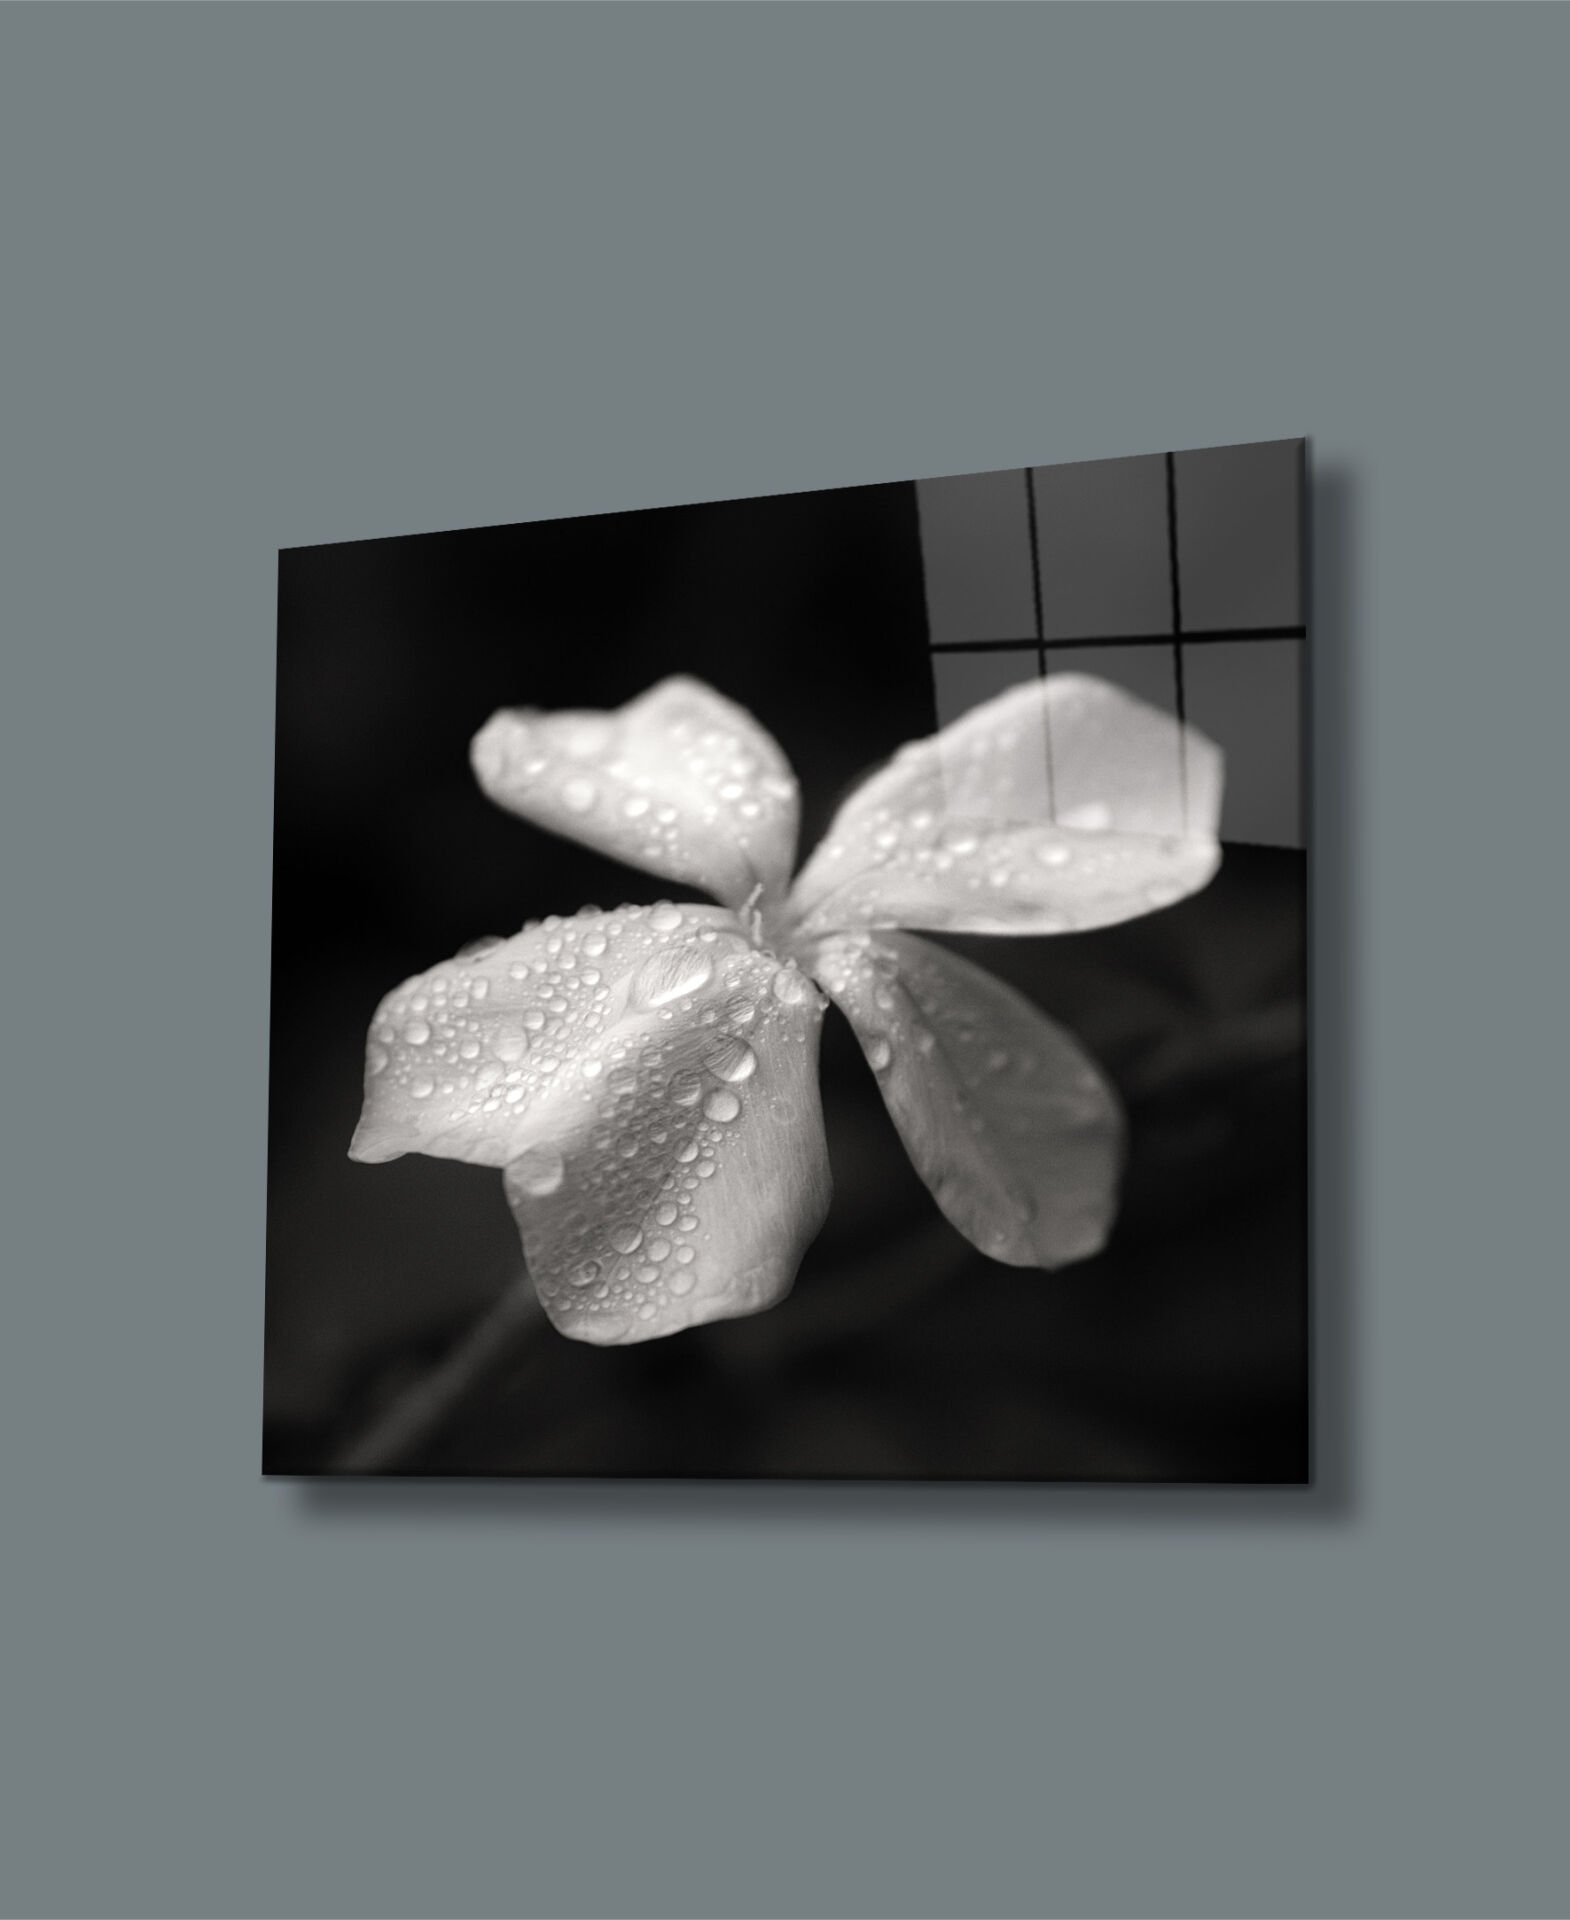 Su Damlalı Beyaz Çiçek Uv Baskılı Cam Tablo 4mm Dayanıklı Temperli Cam 50x50 Cm